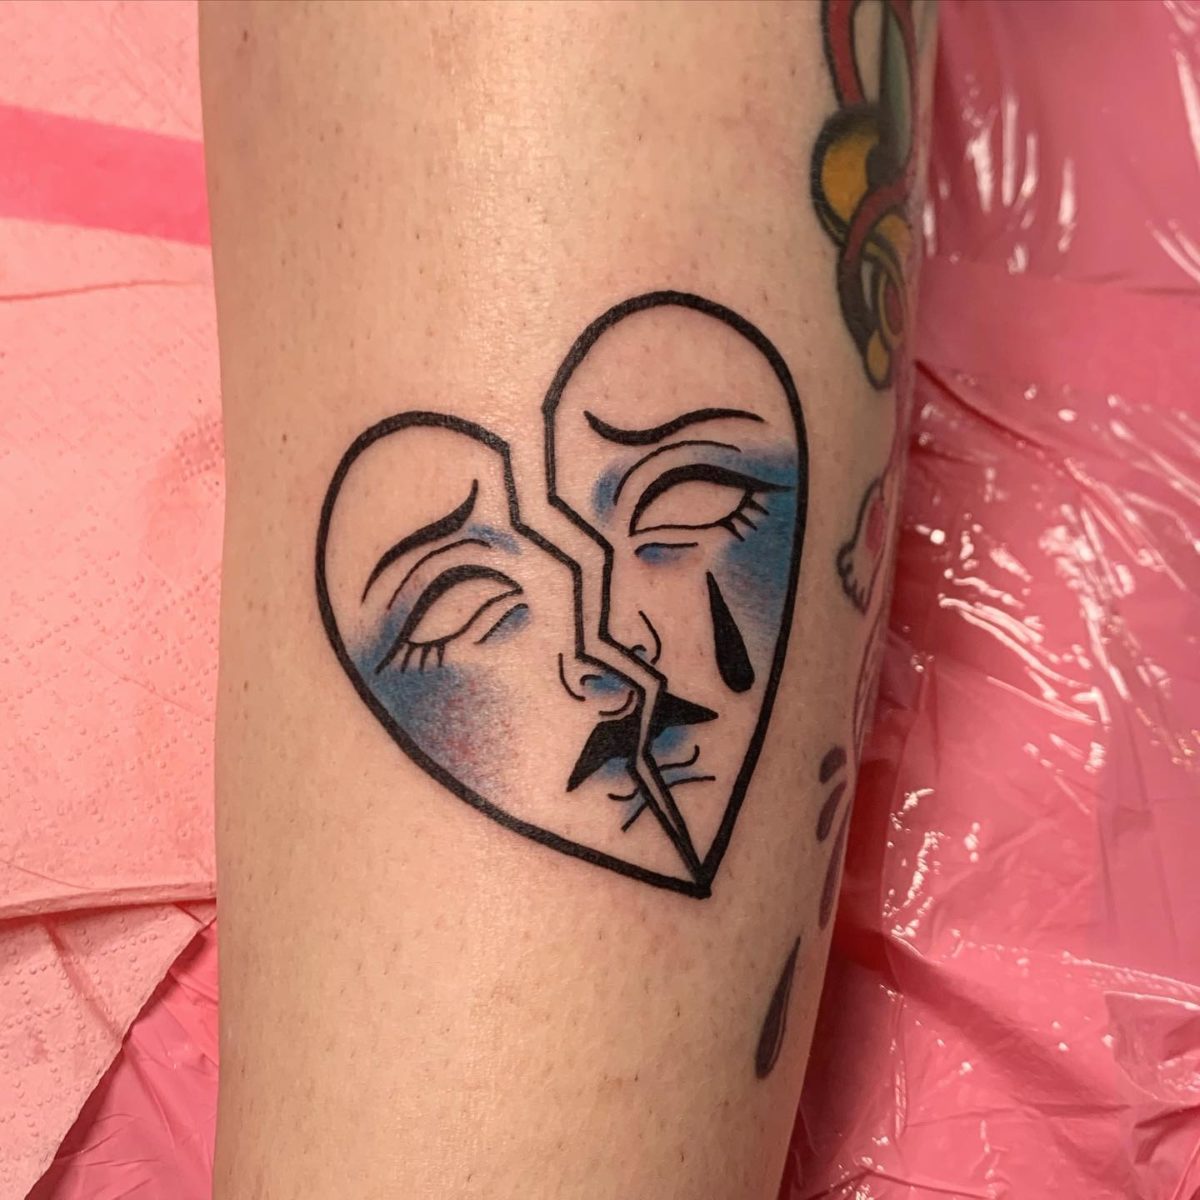 broken heart tattoos